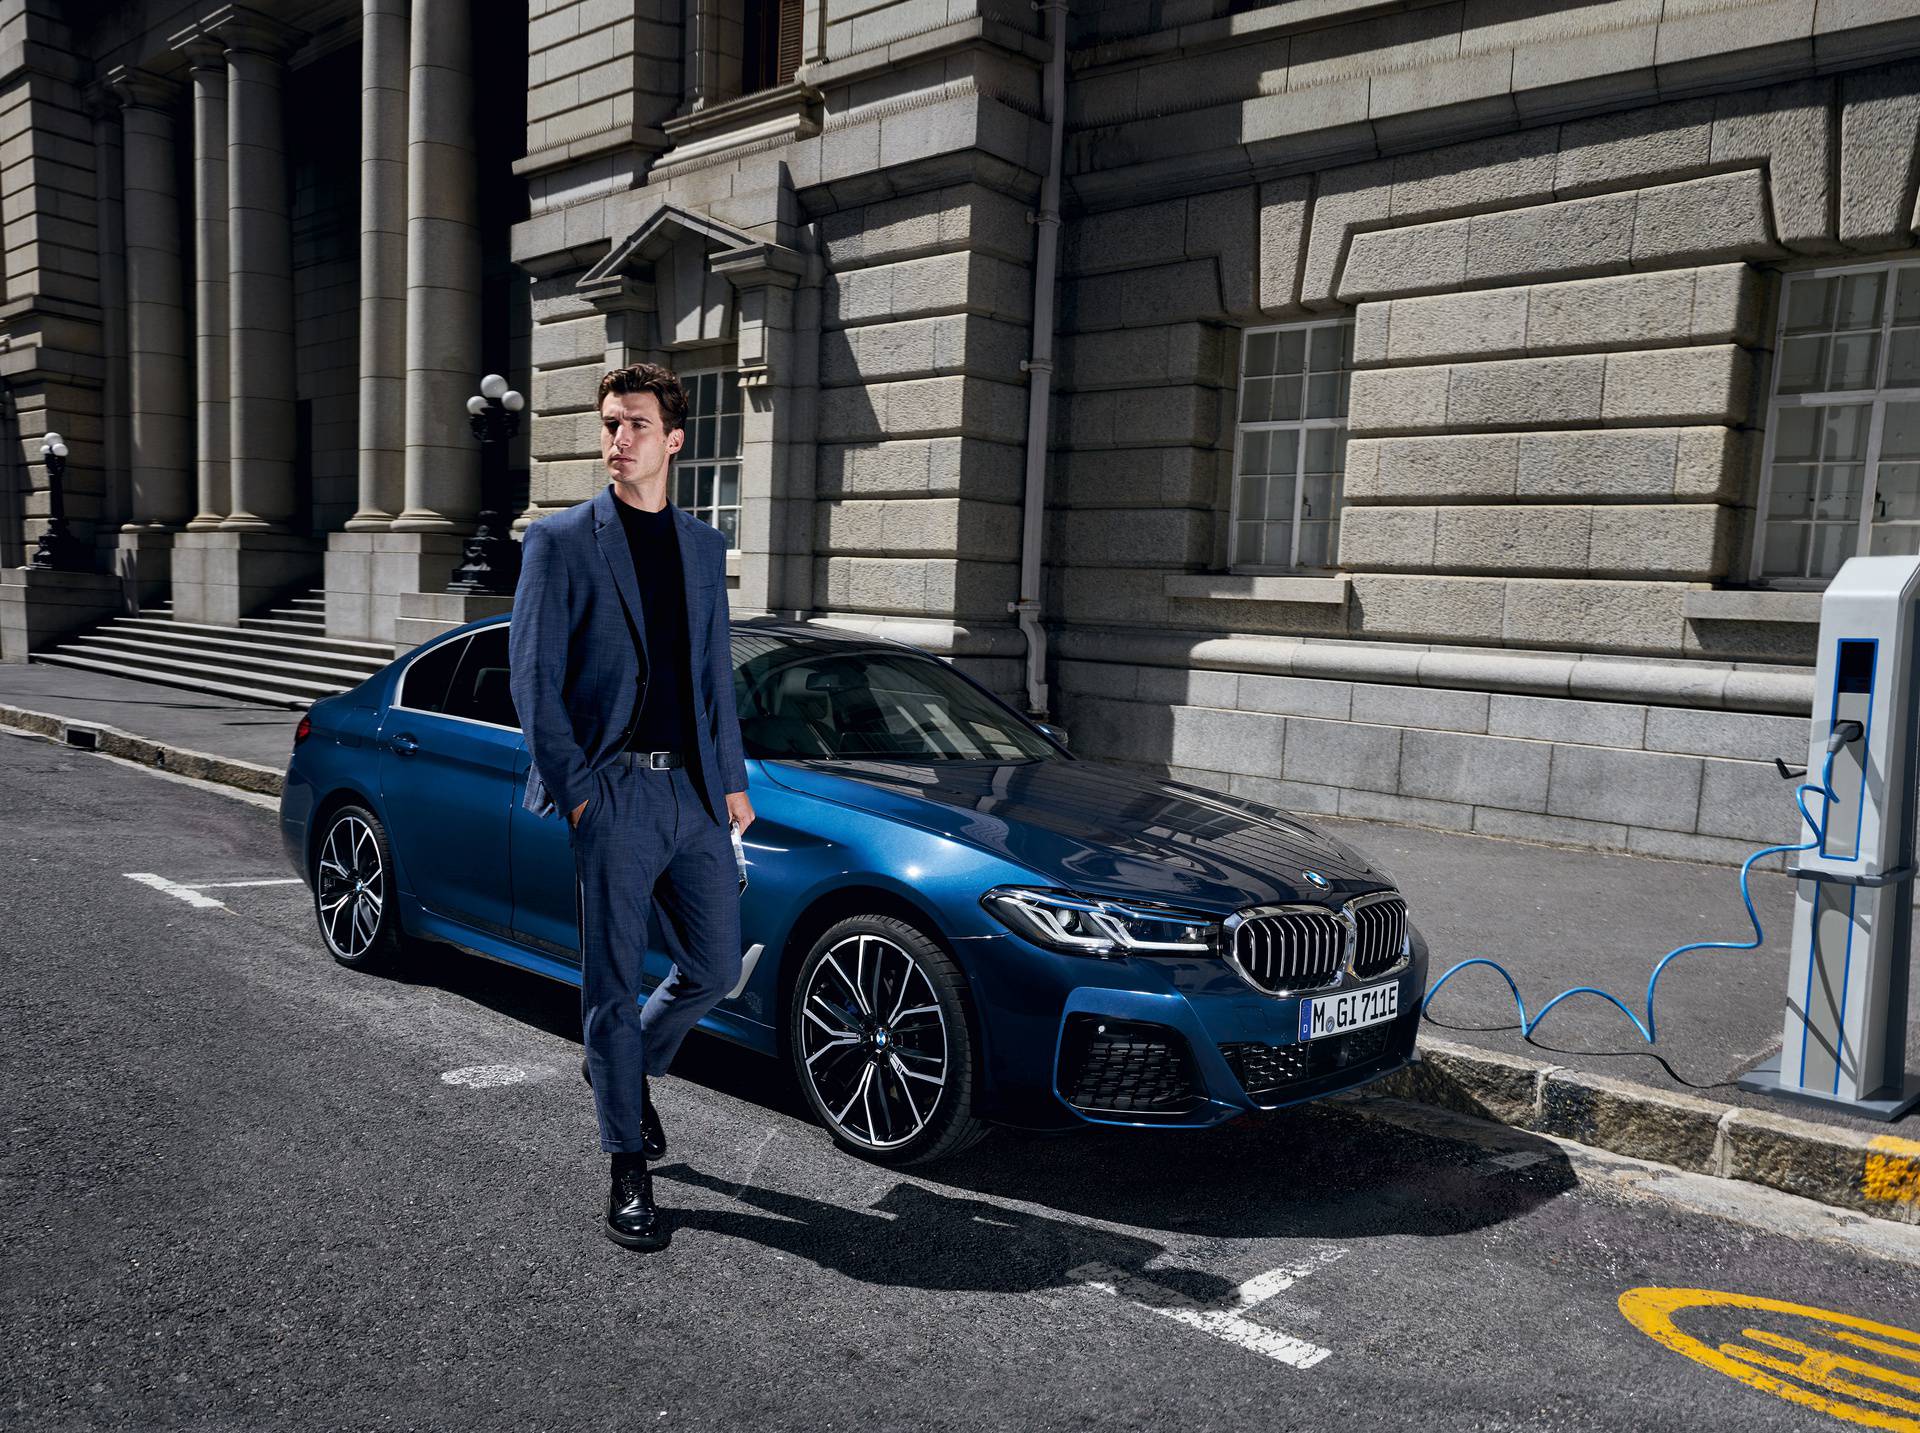 Novi BMW serije 5: Poslovna elegancija i sportski karakter u 'Business 4 you' ponudi